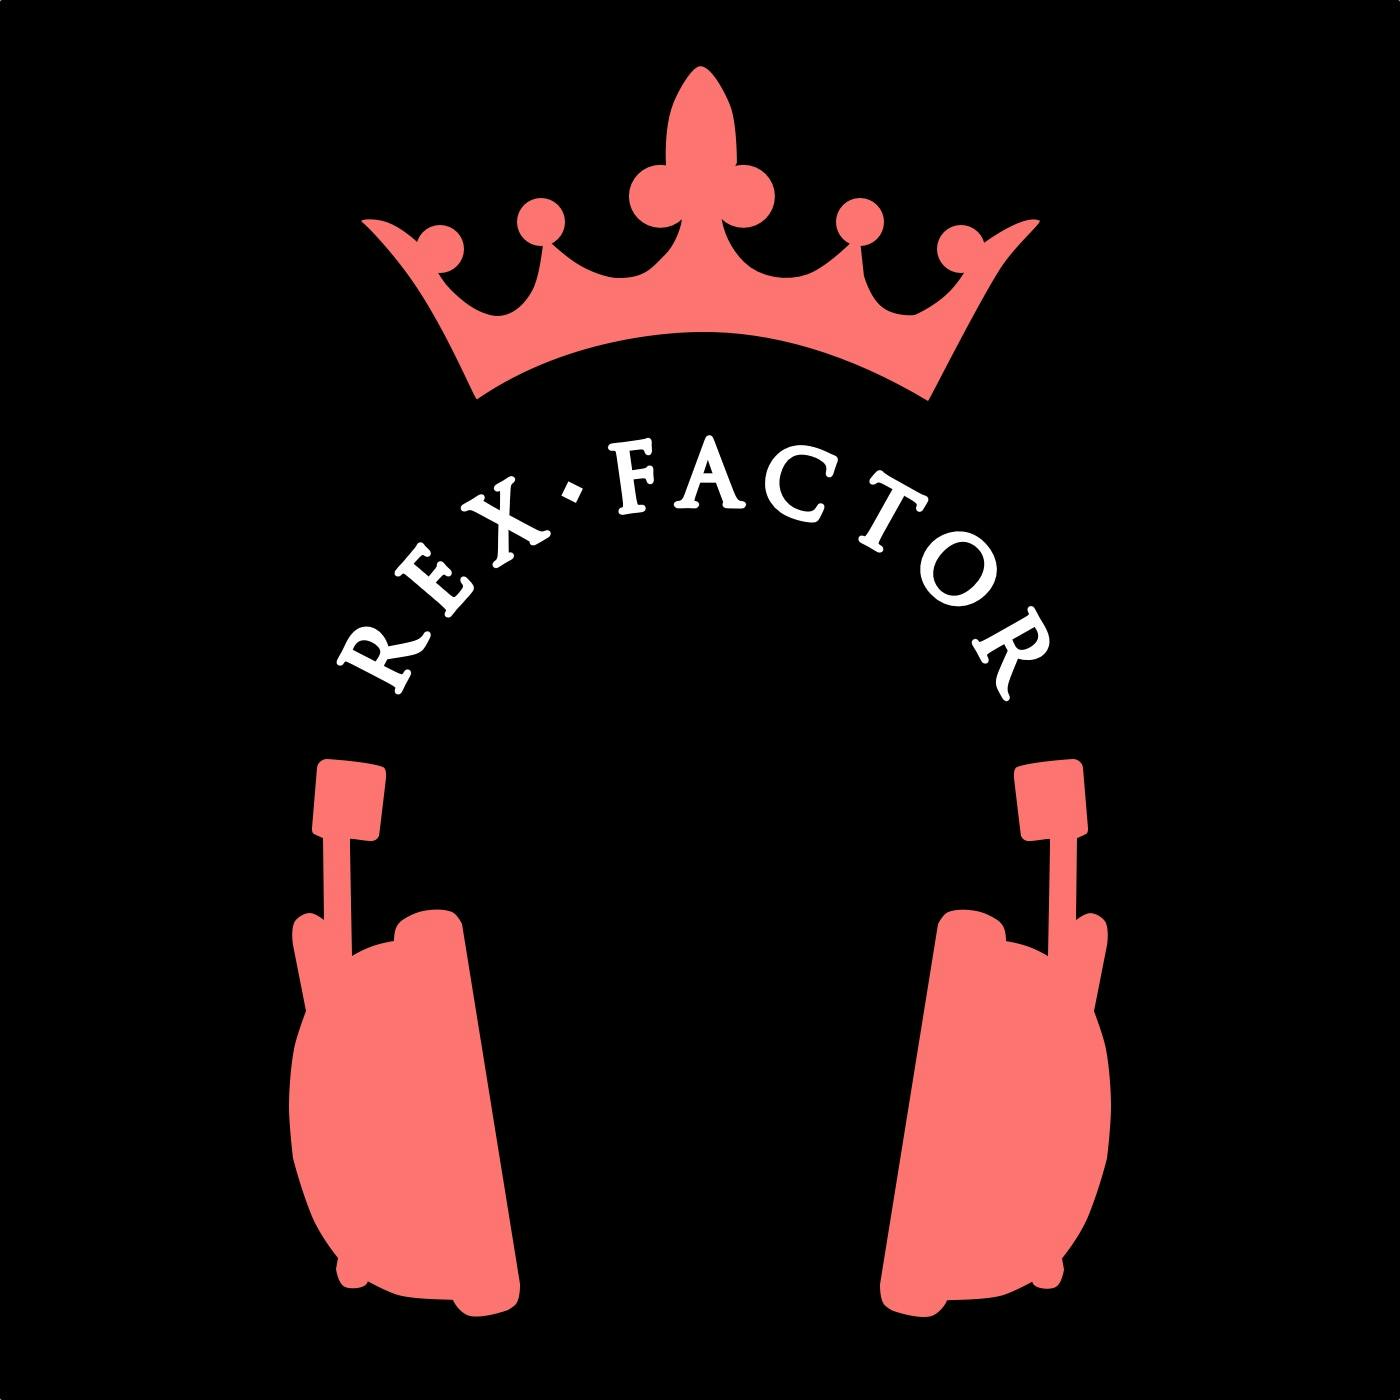 Rex Factor